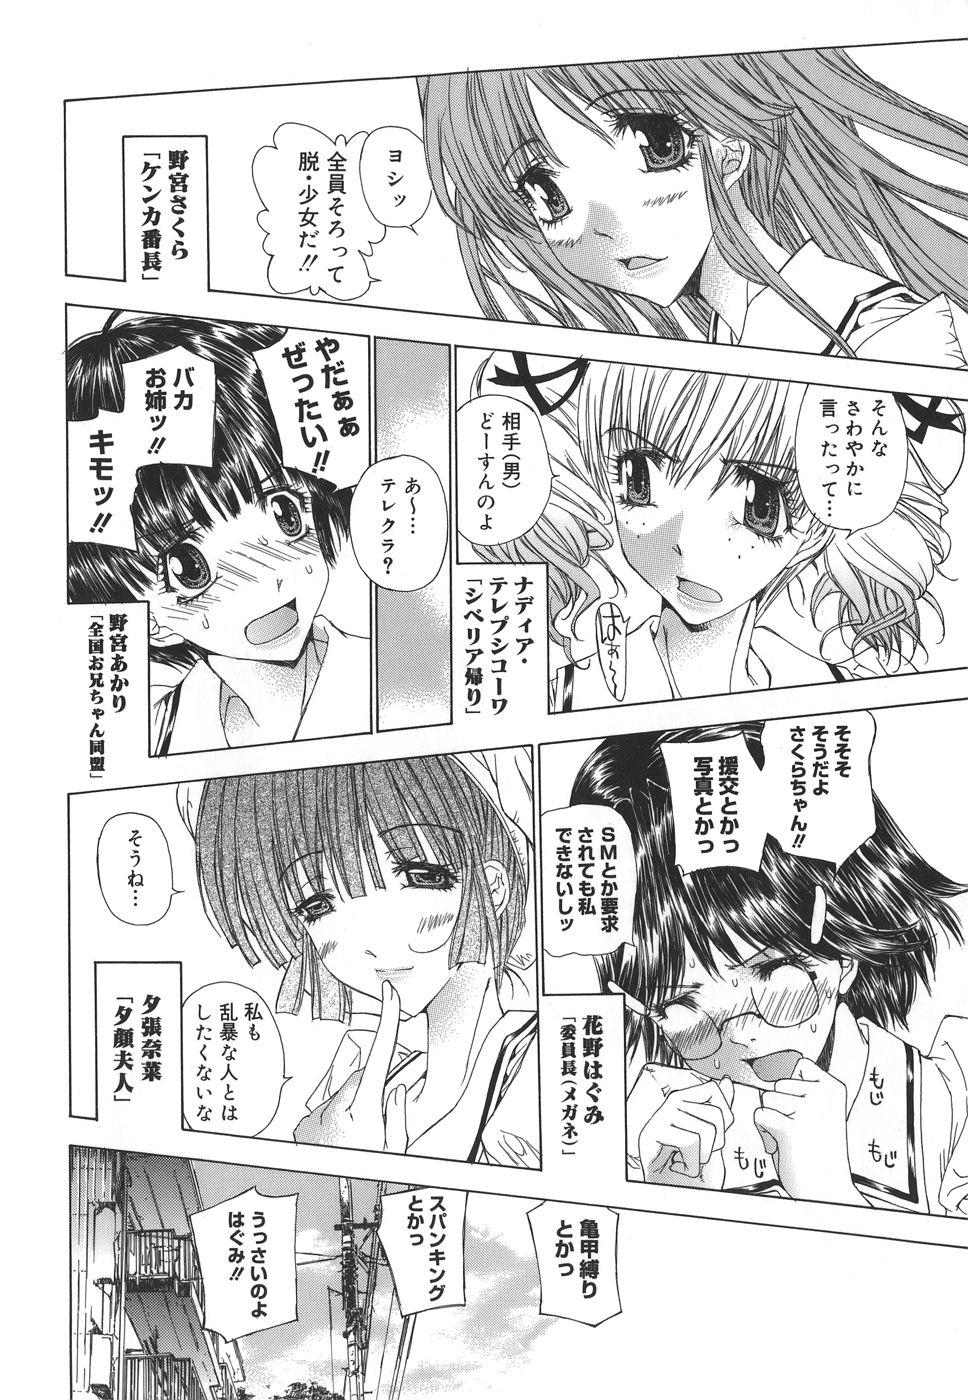 Dirty Talk Meromeron Sakuragumi Freeteenporn - Page 9